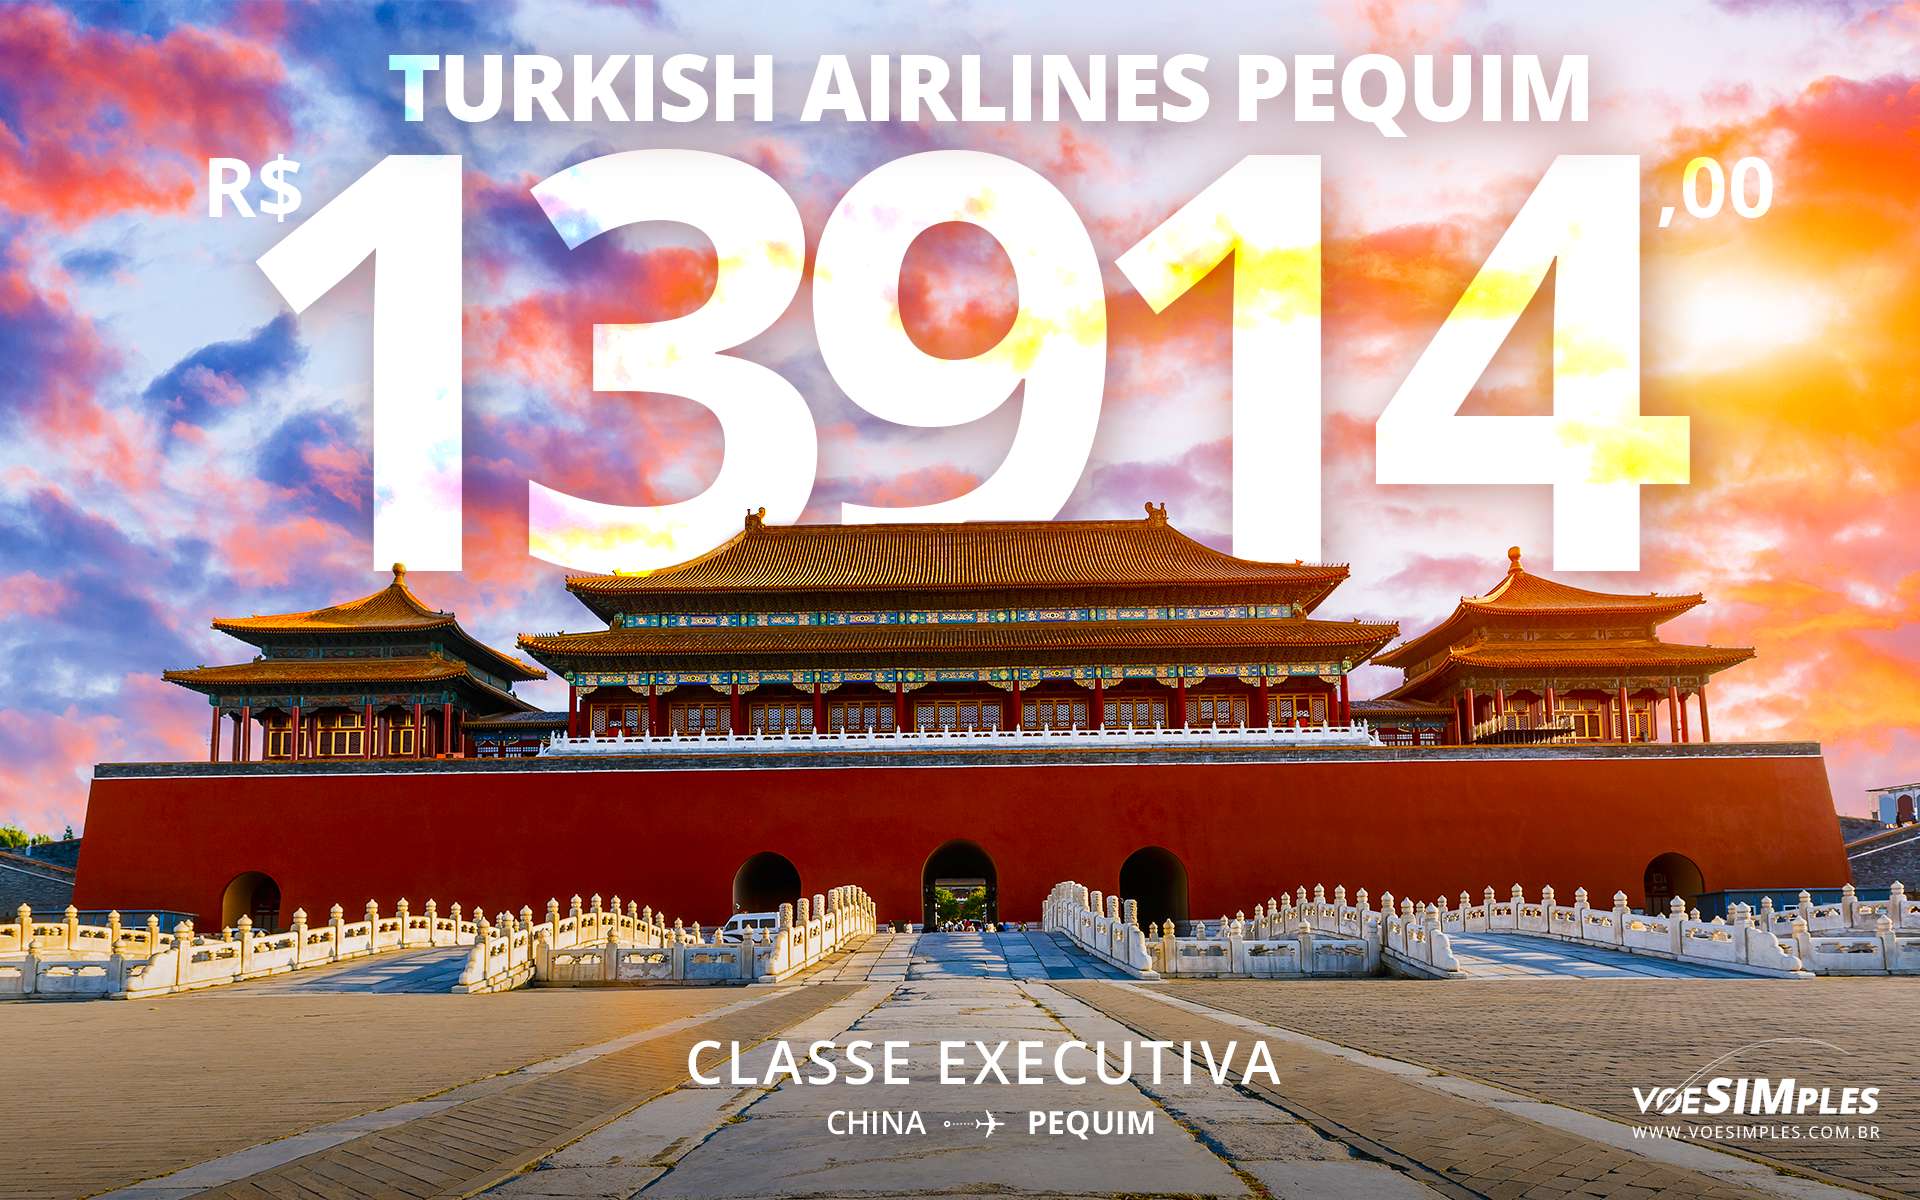 passagem-aerea-promocional-executiva-turkish-airlines-pequim-china-asia-voe-simples